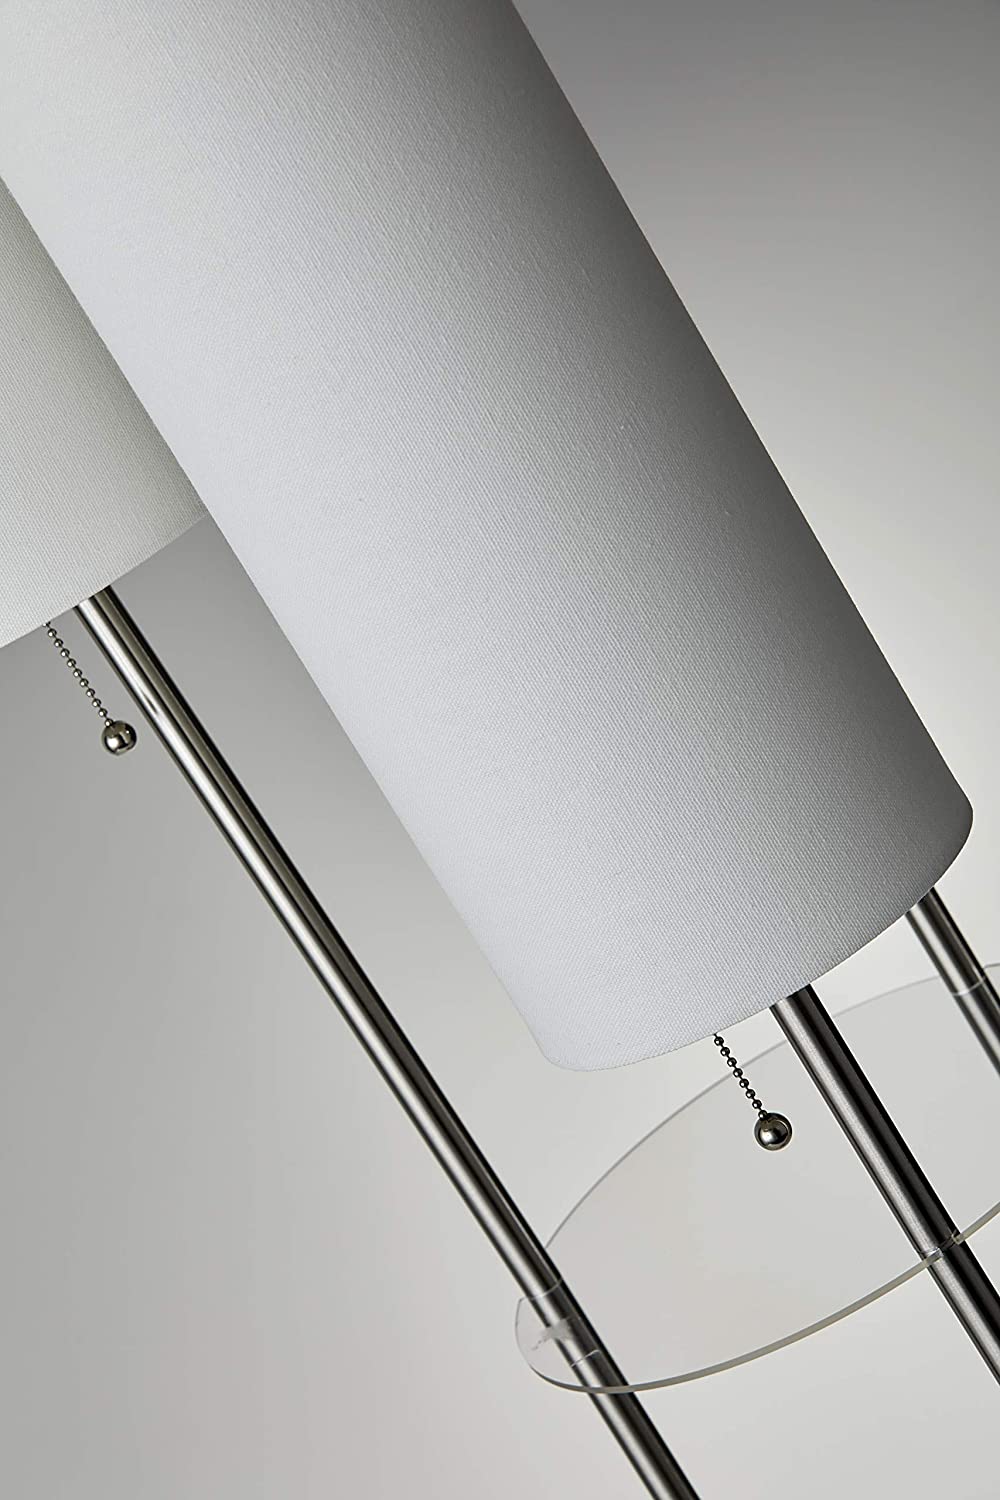 Adesso 4305 22 Trio Floor Lamp 3 Lamps Buy - Best Online Lighting Stores